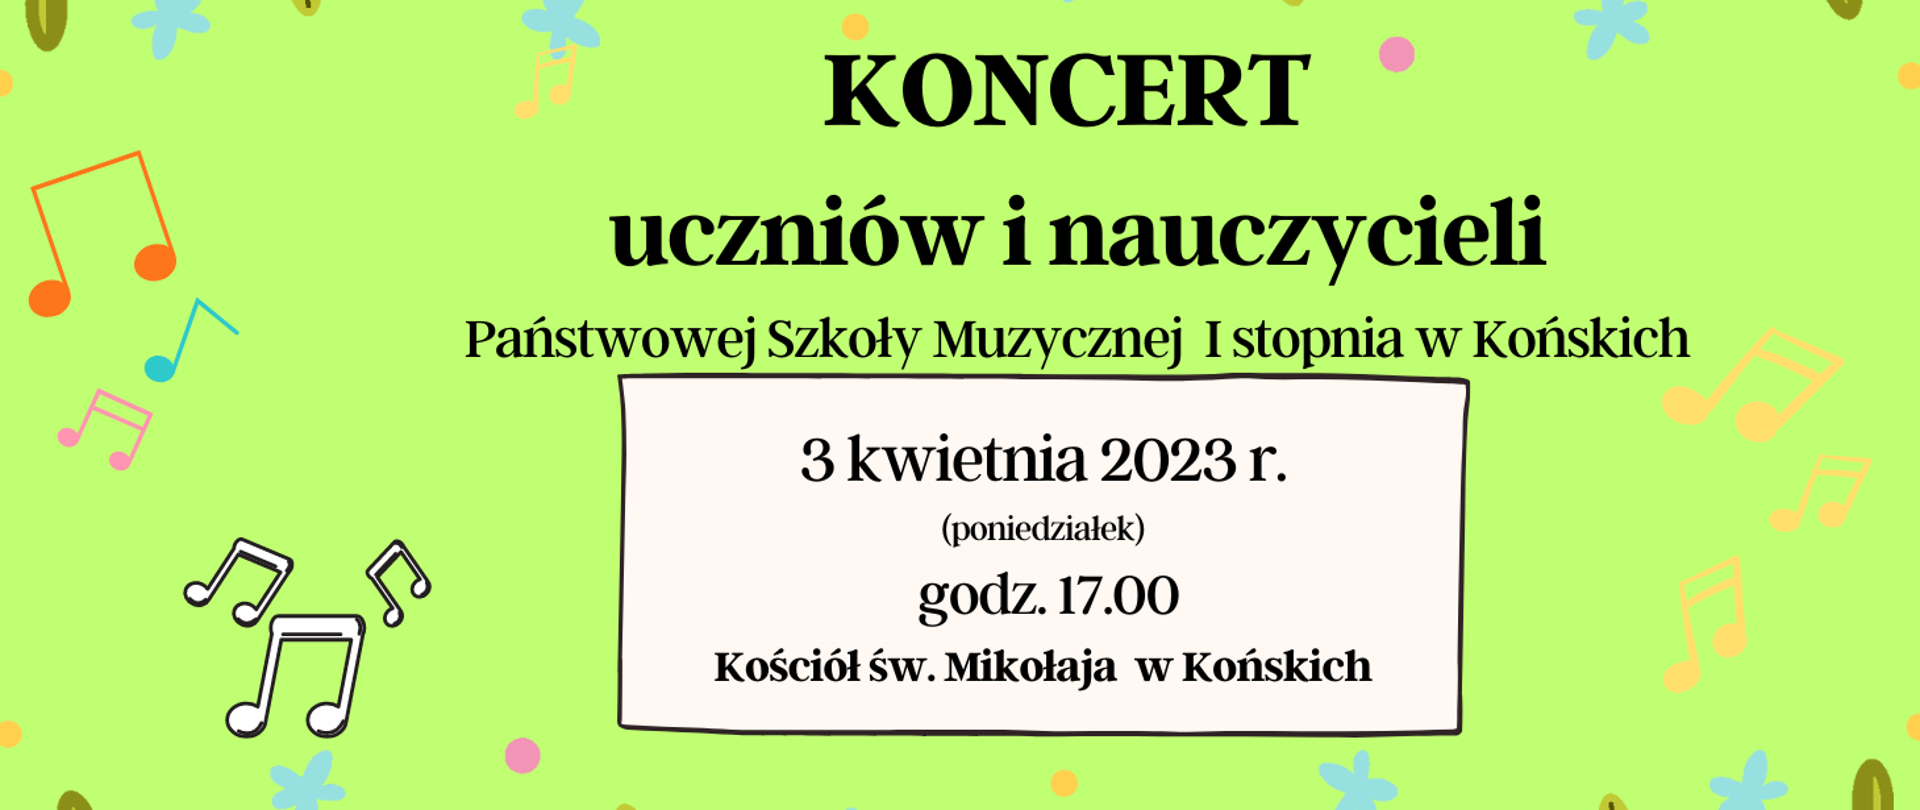 Zielony baner informujący o koncercie uczniów i nauczycieli szkoły muzycznej w Końskich w kościele w dniu 3 kwietnia 2023r. Czarne litery, kolorowe nutki.